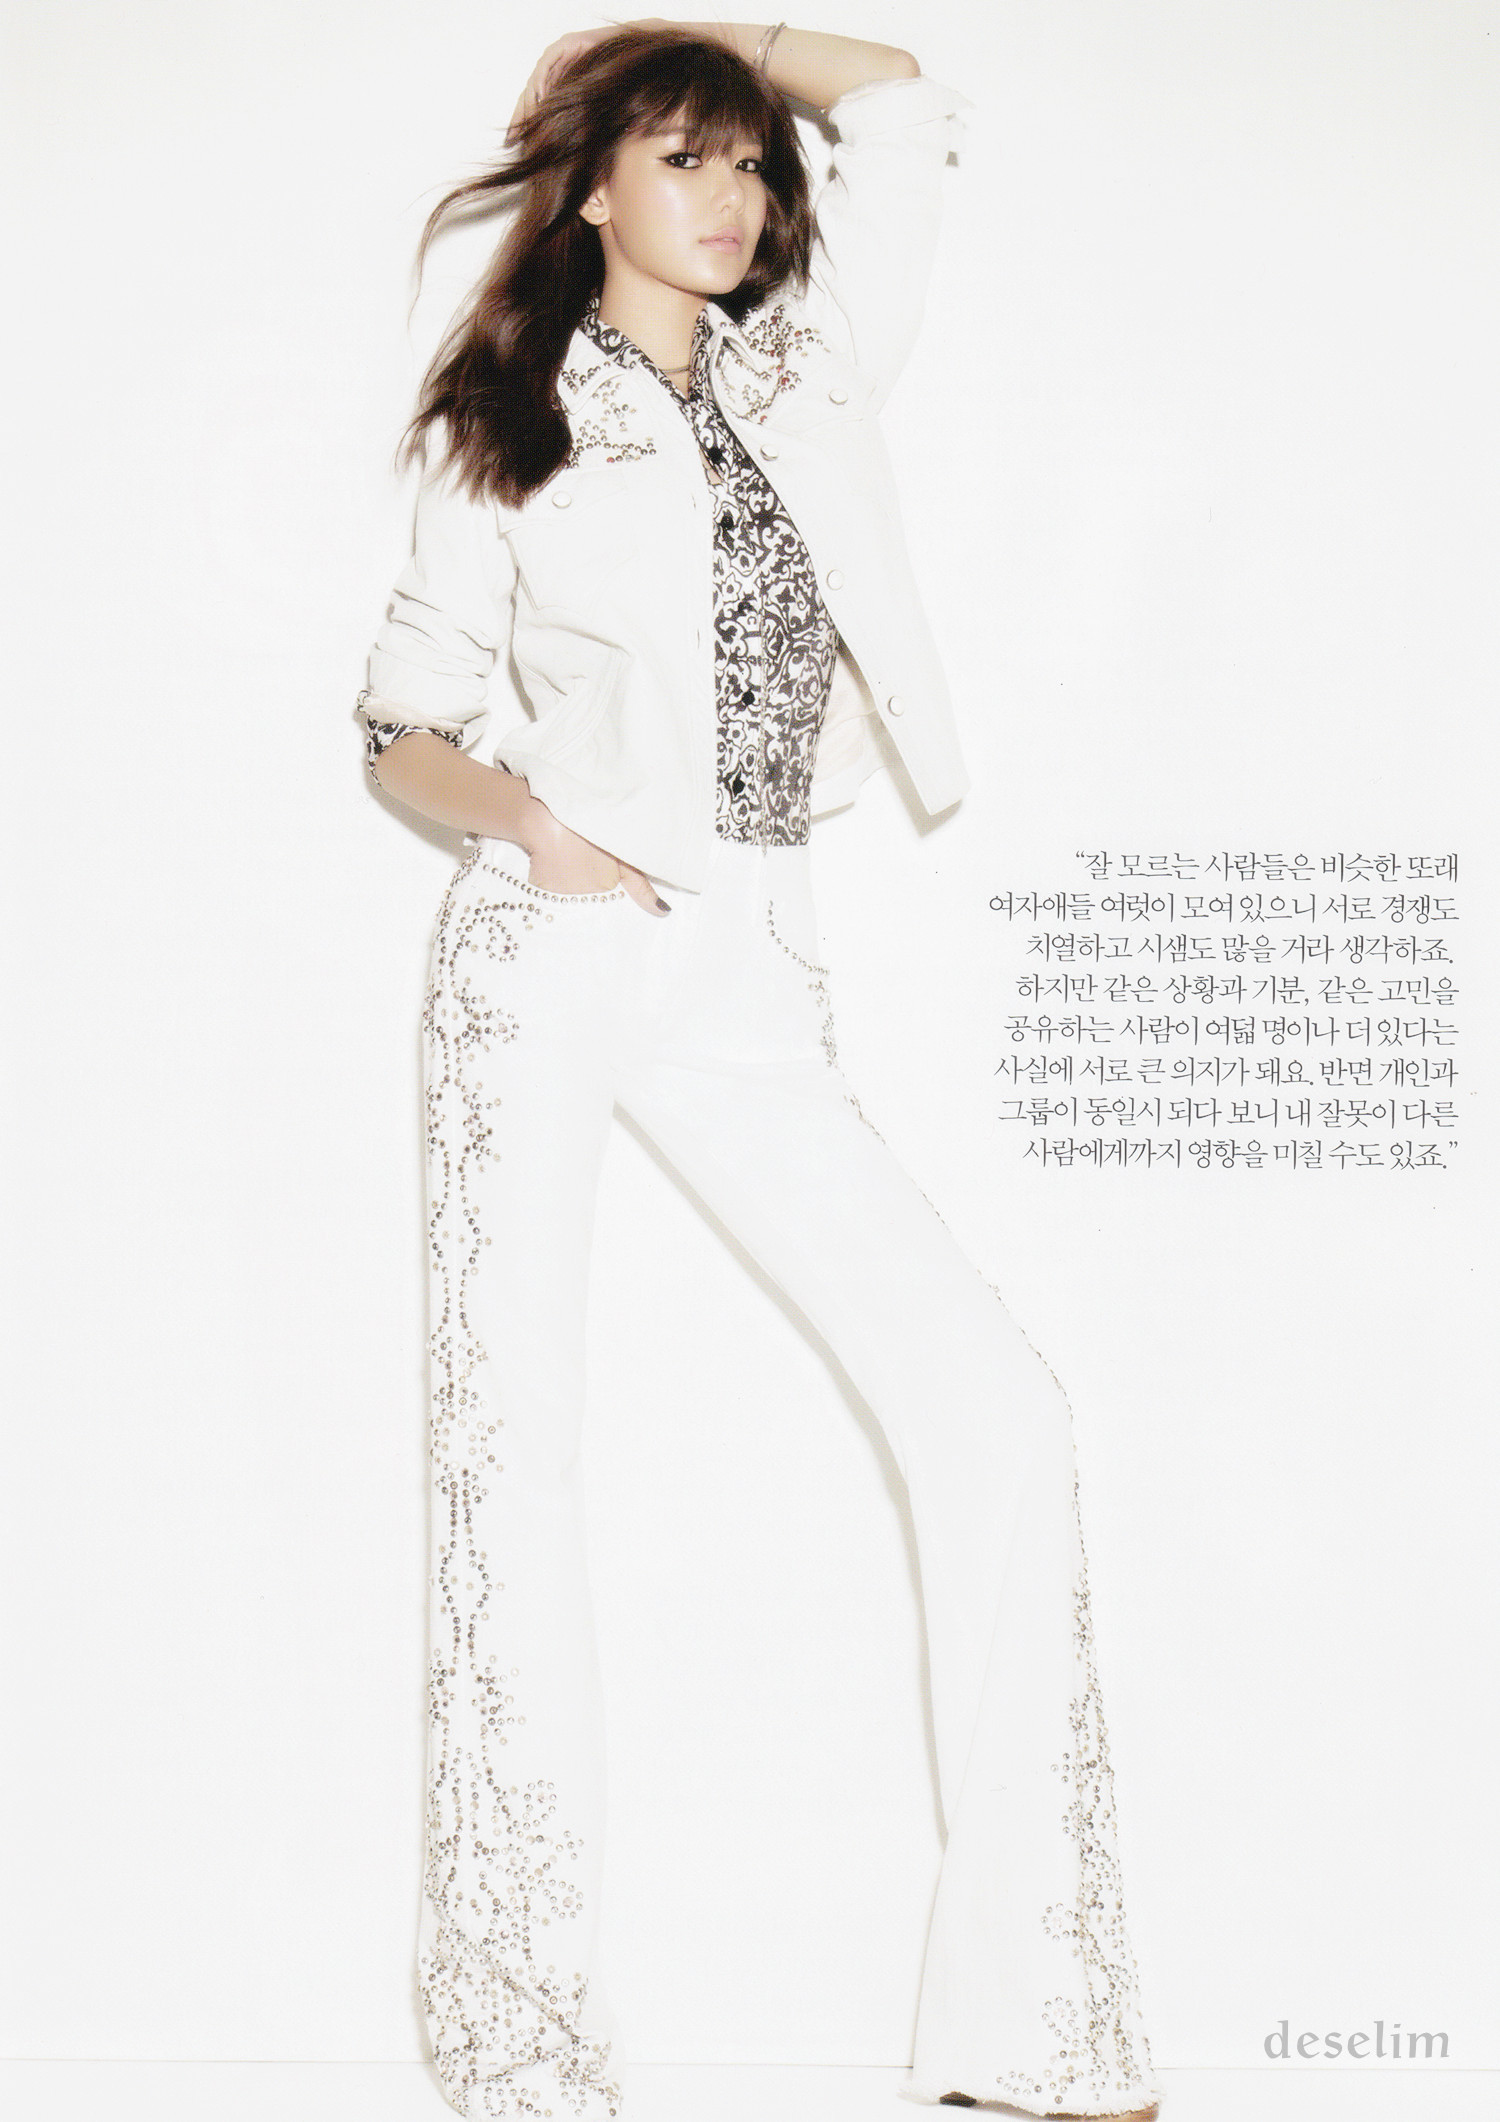 [PICS]  Sooyoung en la revista Harper’s Bazaar  edicion enero 75f3b859jw1e07bnwuyu3j